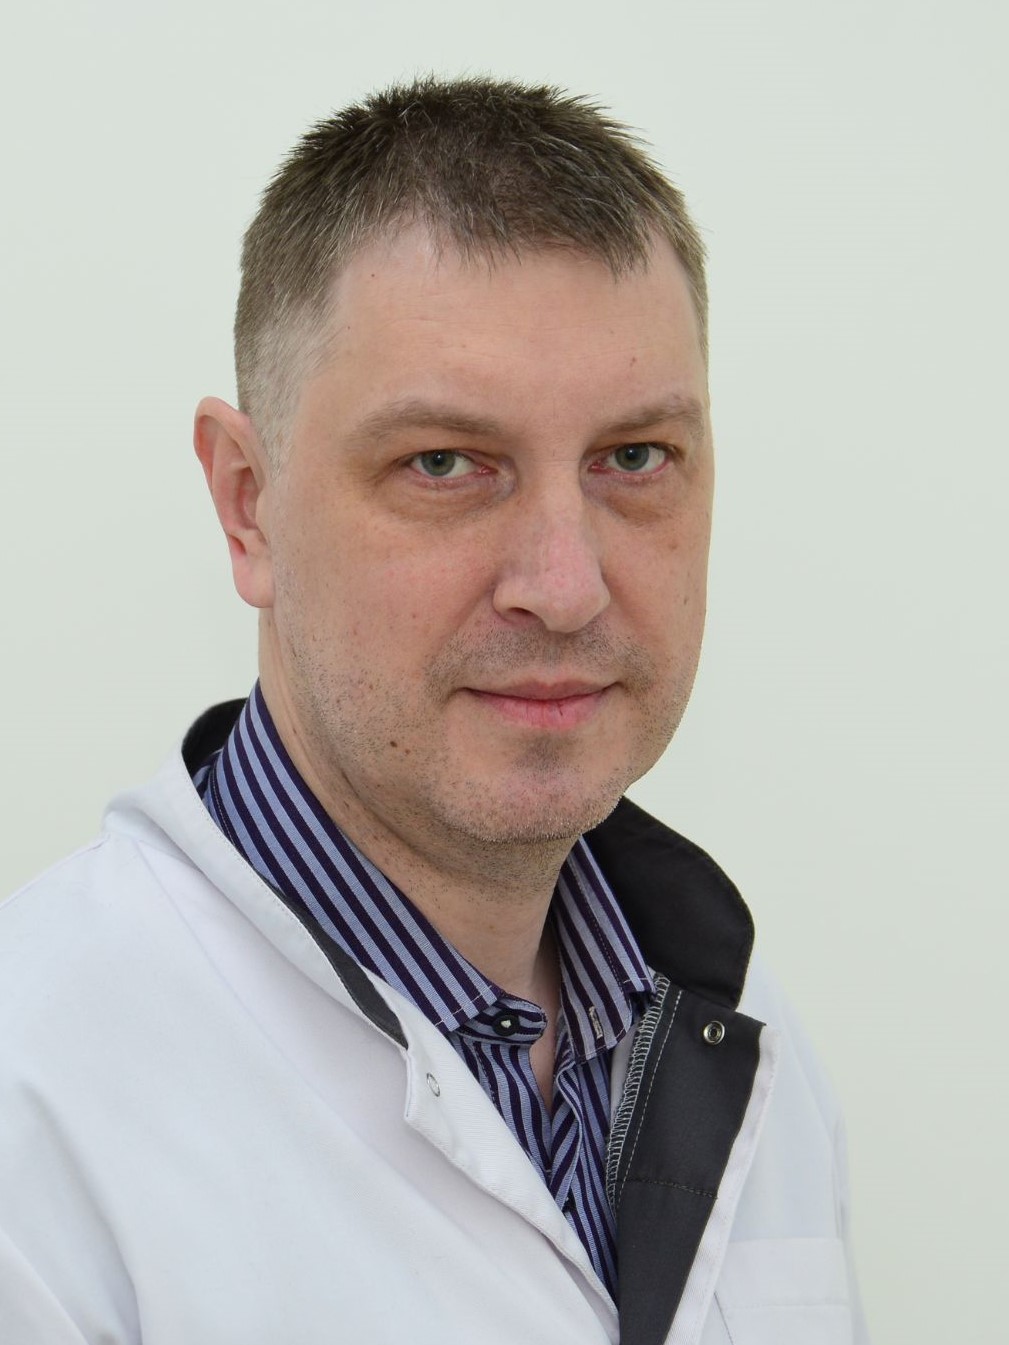 Хабаров Иван Юрьевич, кафедра психиатрии и психотерапии с клиникой